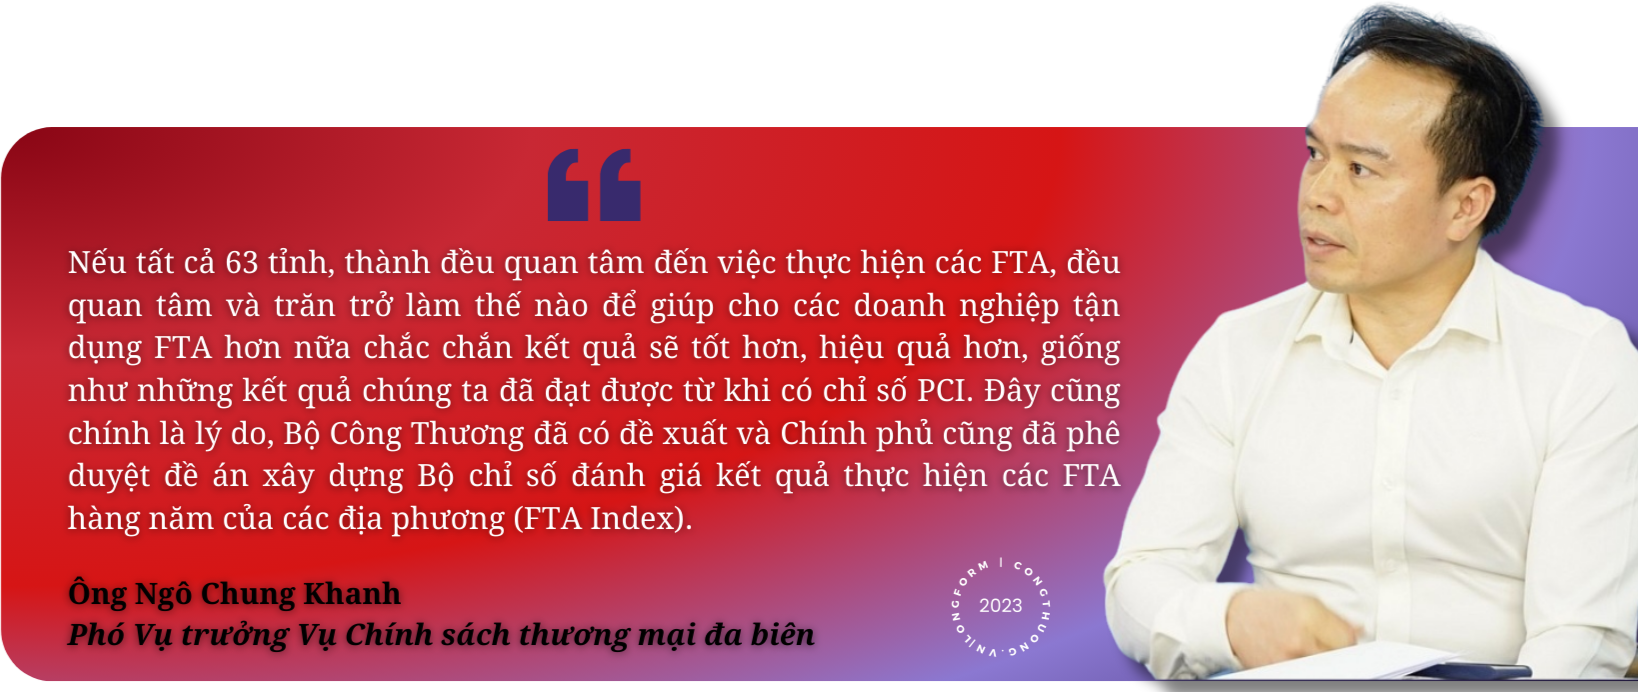 Longform | FTA Index - Kỳ vọng cải thiện mạnh mẽ công tác hỗ trợ tận dụng FTA